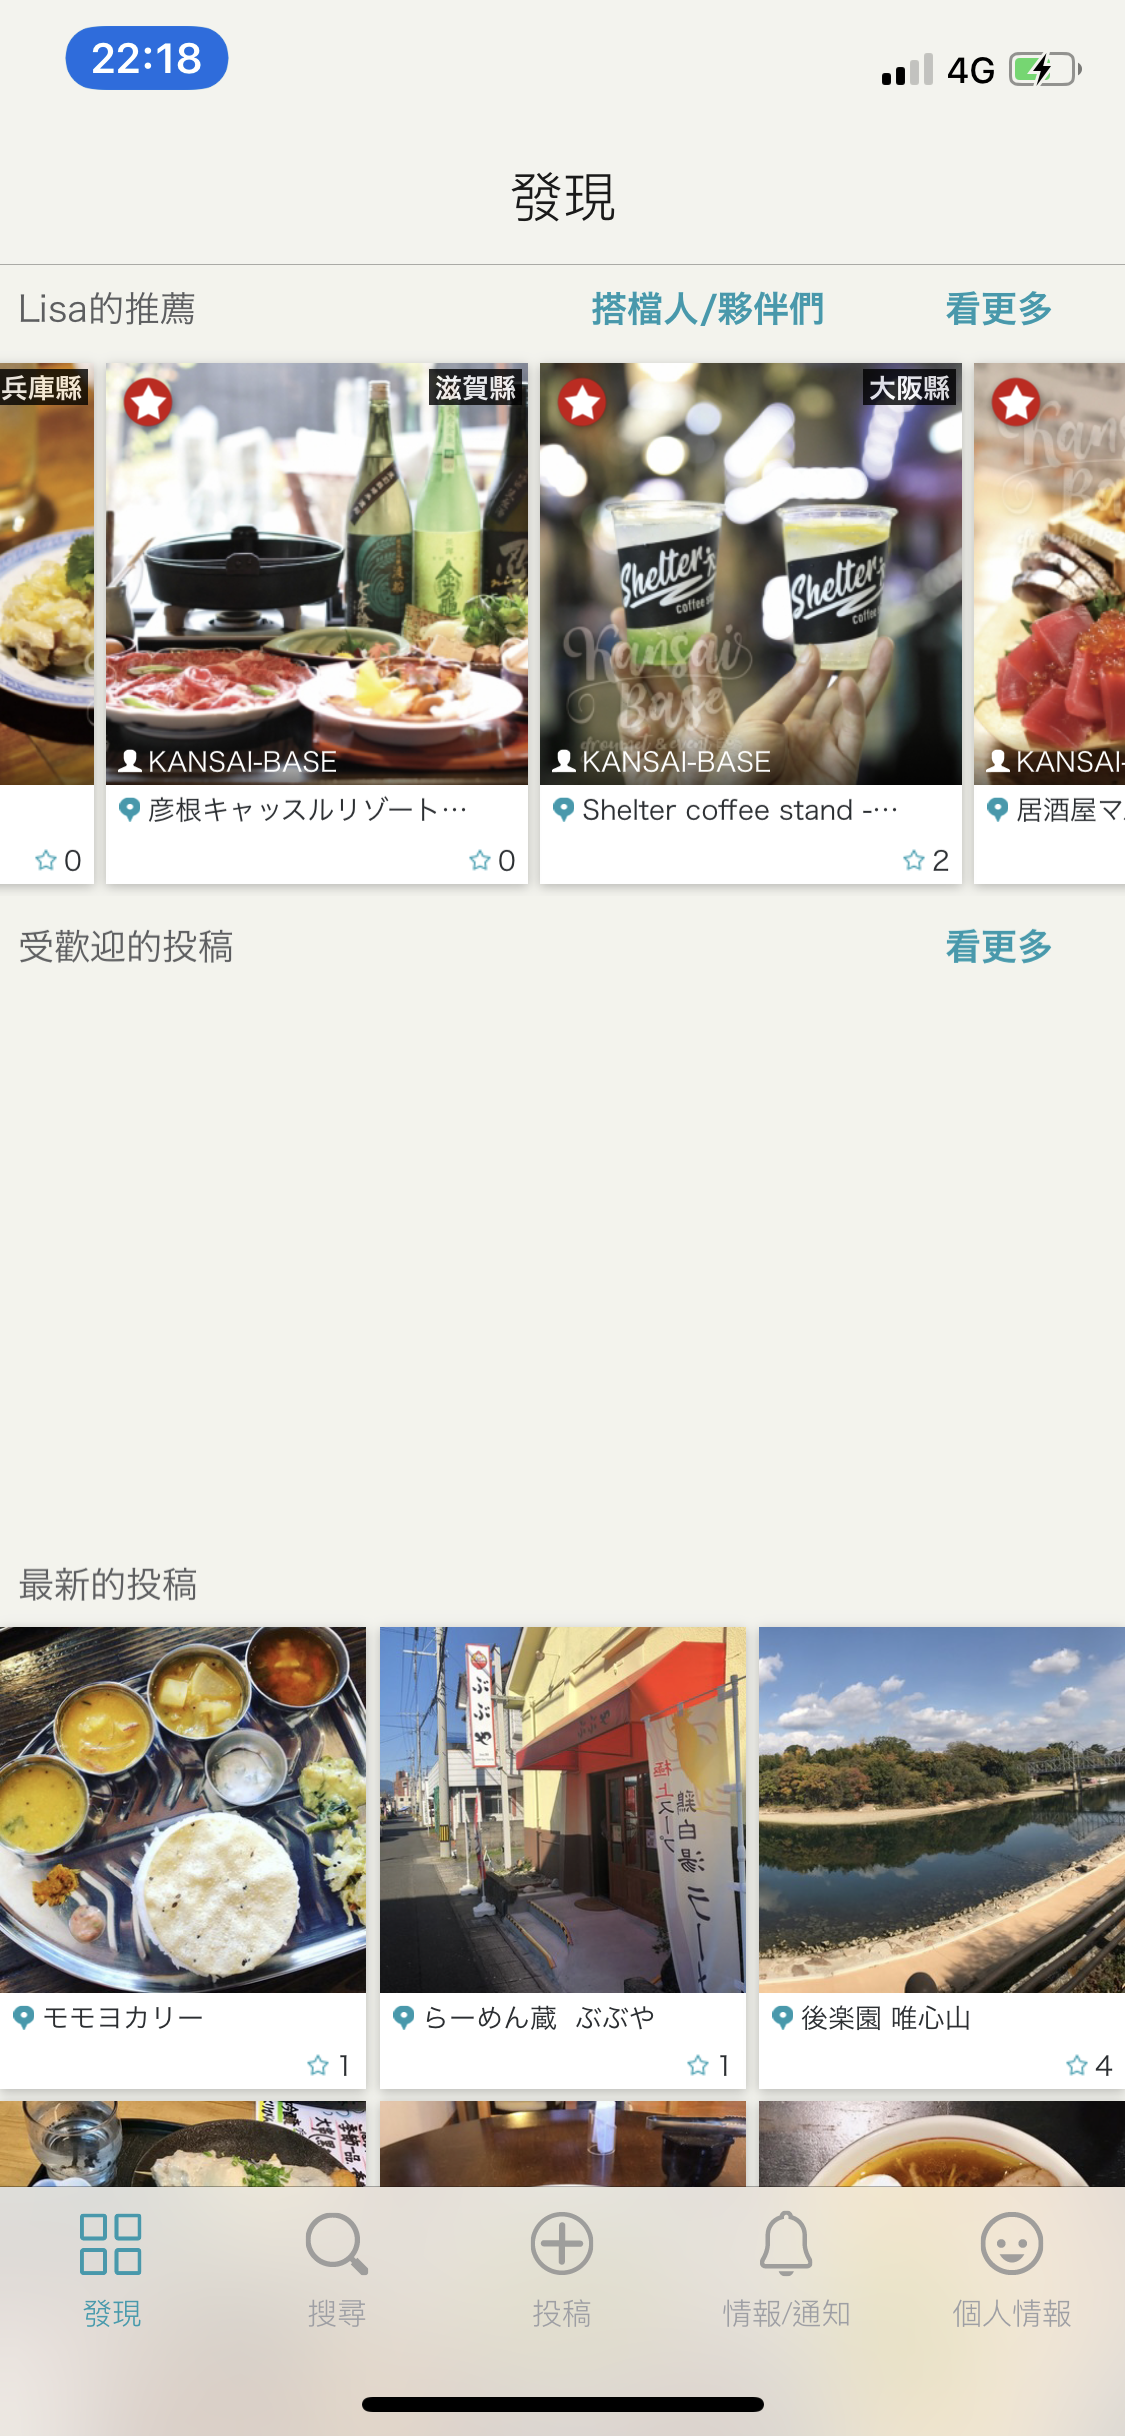 旅日好用APP推薦．繁體中文、圖文並茂找美食：Smart Guide Lisa @右上世界食旅